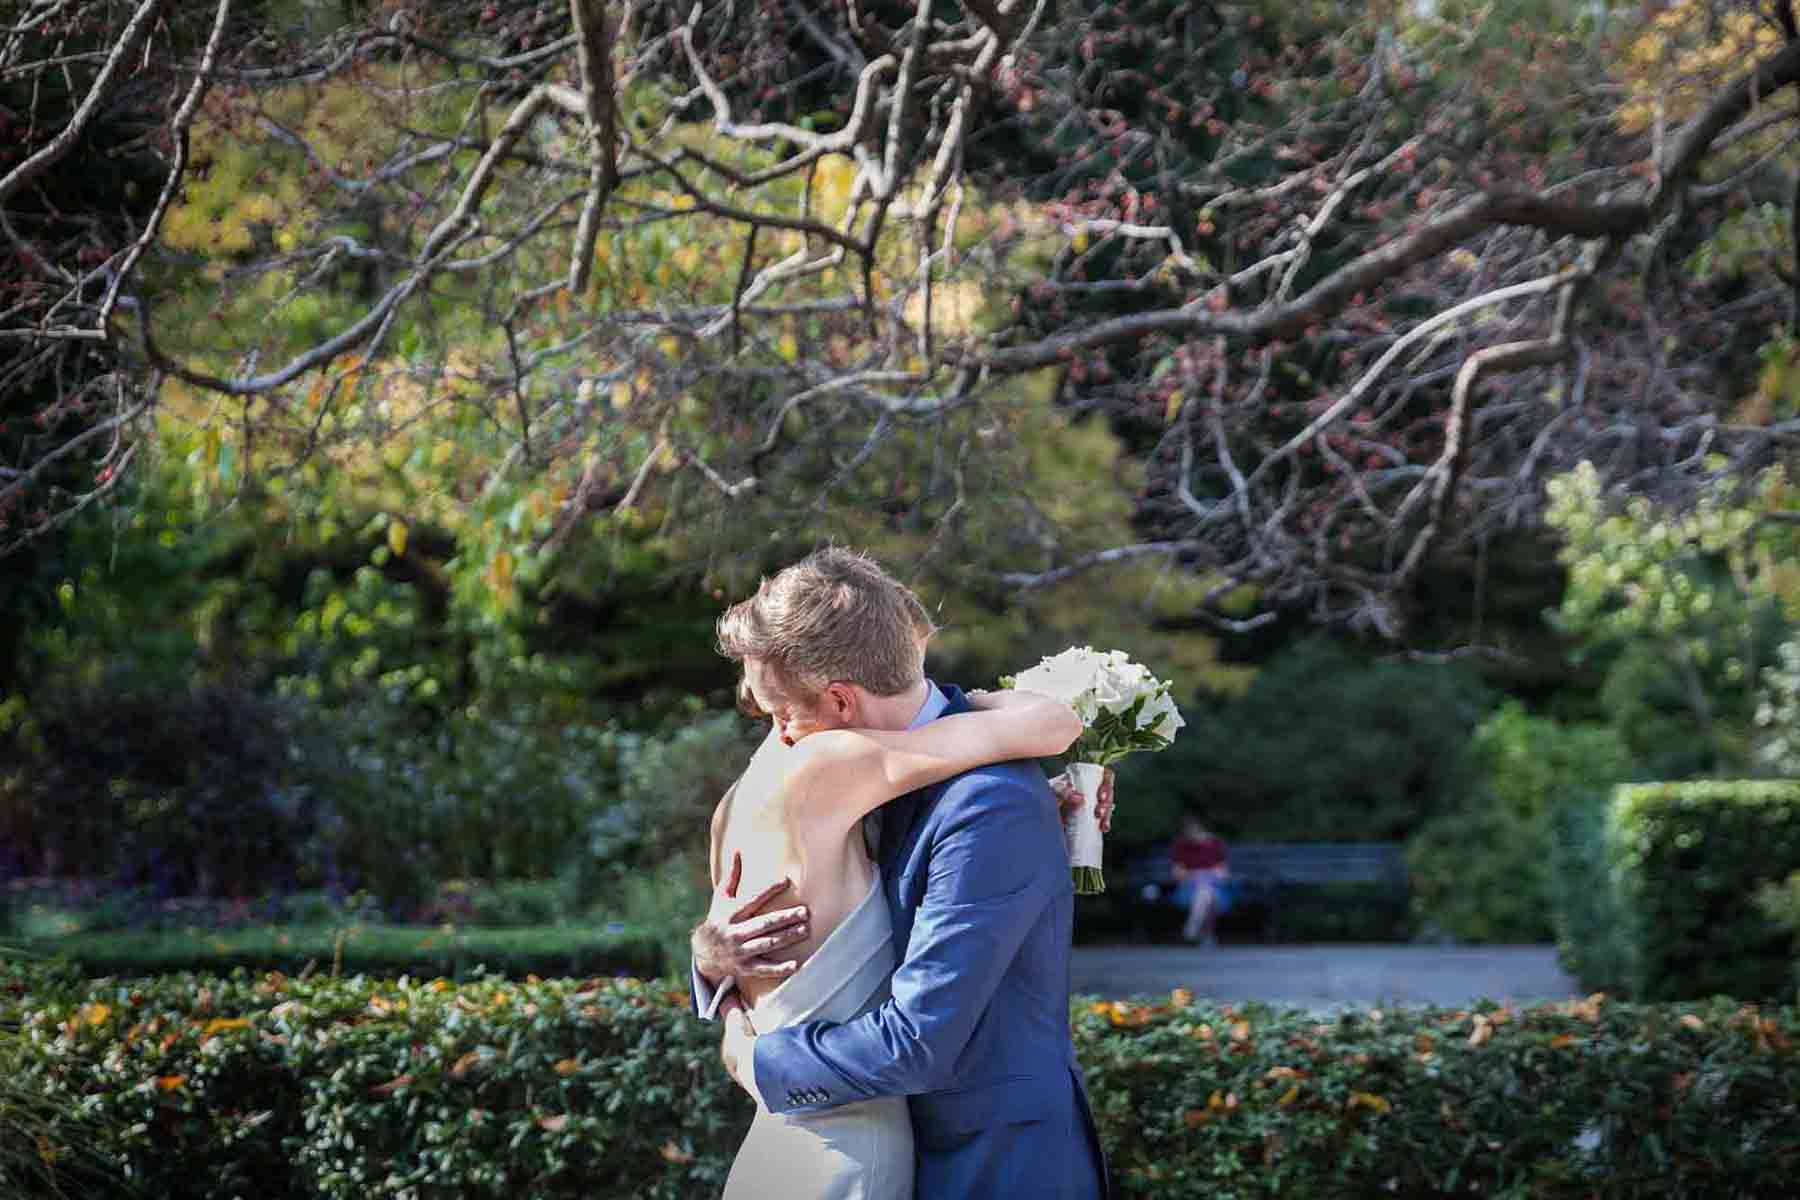 Conservatory Garden wedding photos of bride and groom hugging in garden